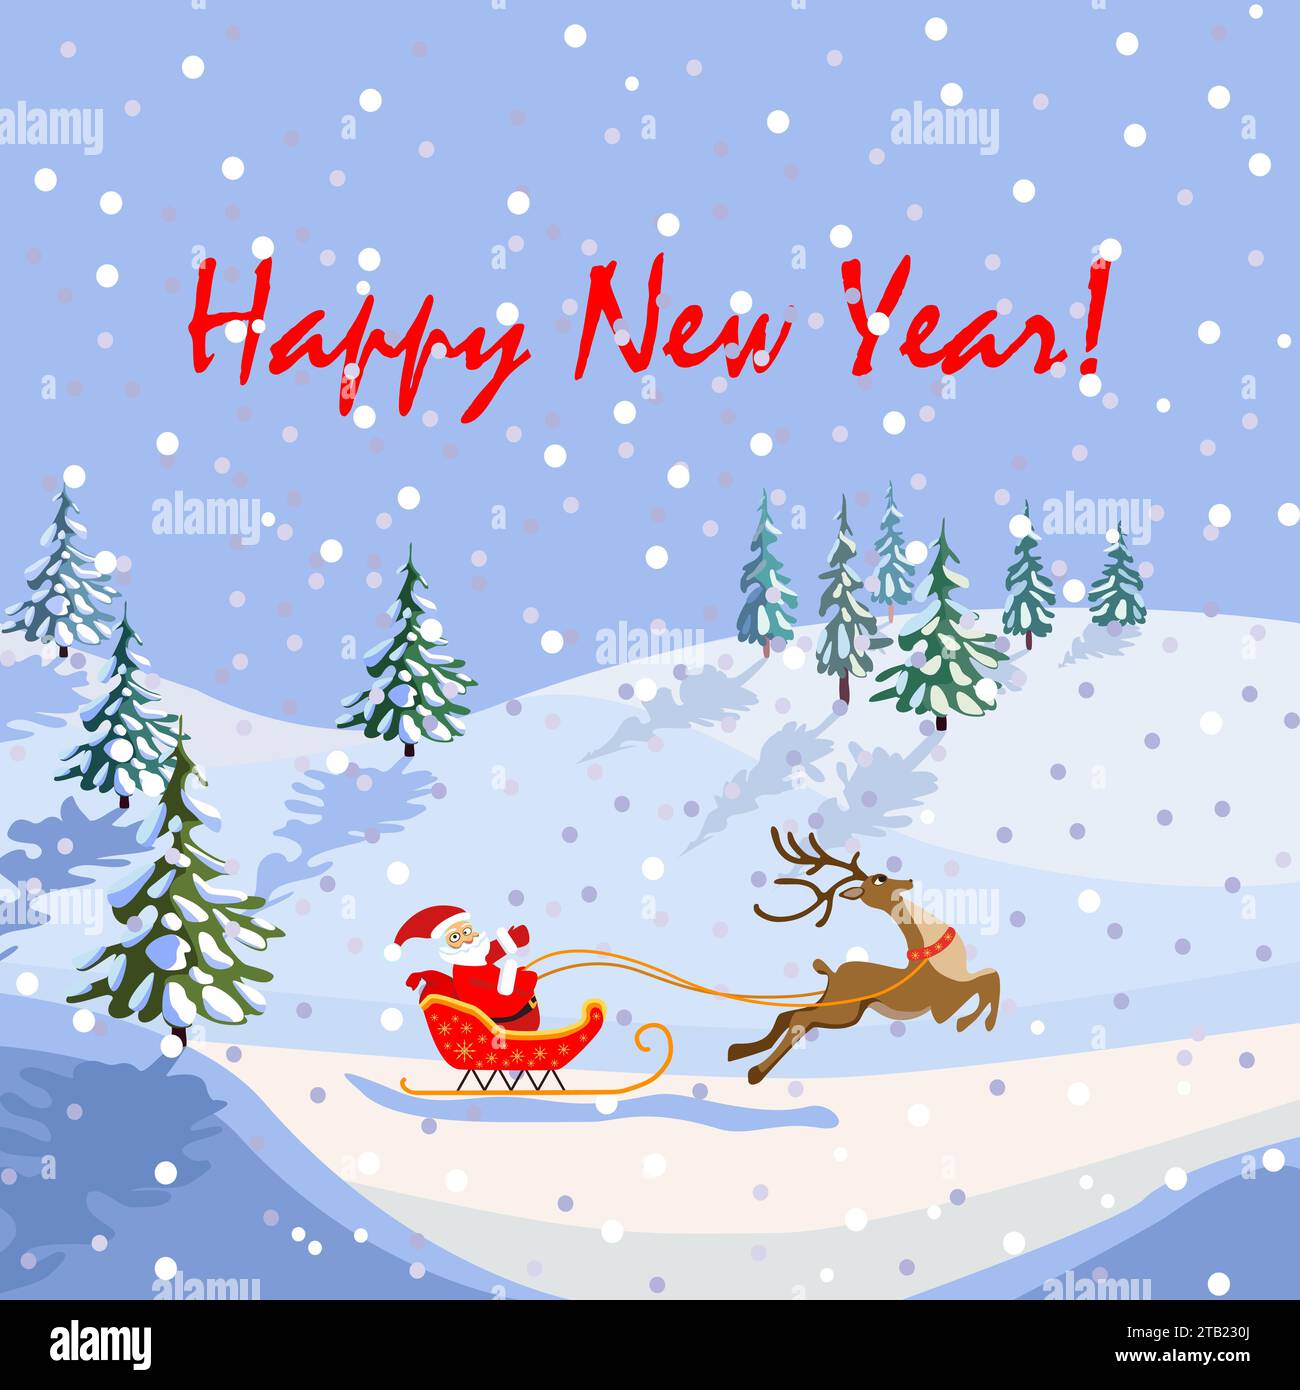 Glückwunschkarte für das neue Jahr, weihnachtsmann auf einem Schlitten mit Rentieren, nicht KI, handgezeichnet Stock Vektor